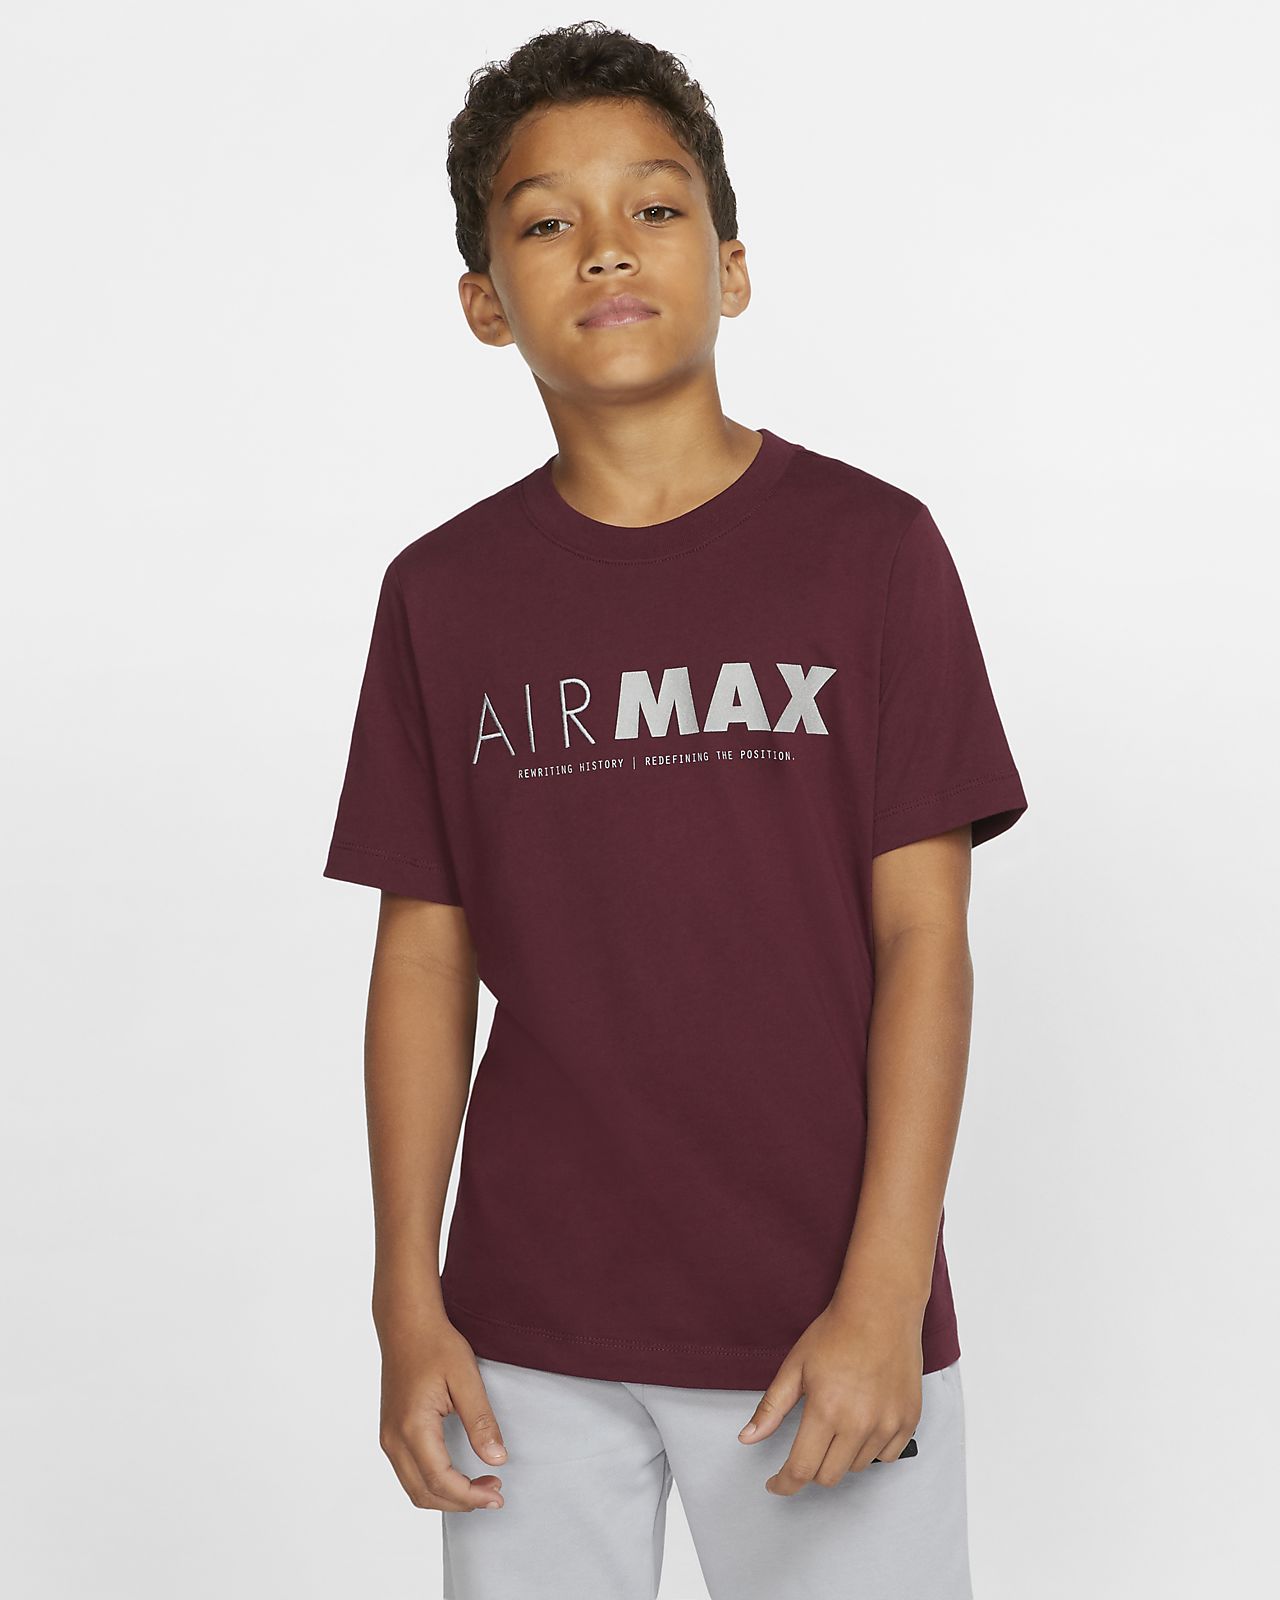 air max tee shirts